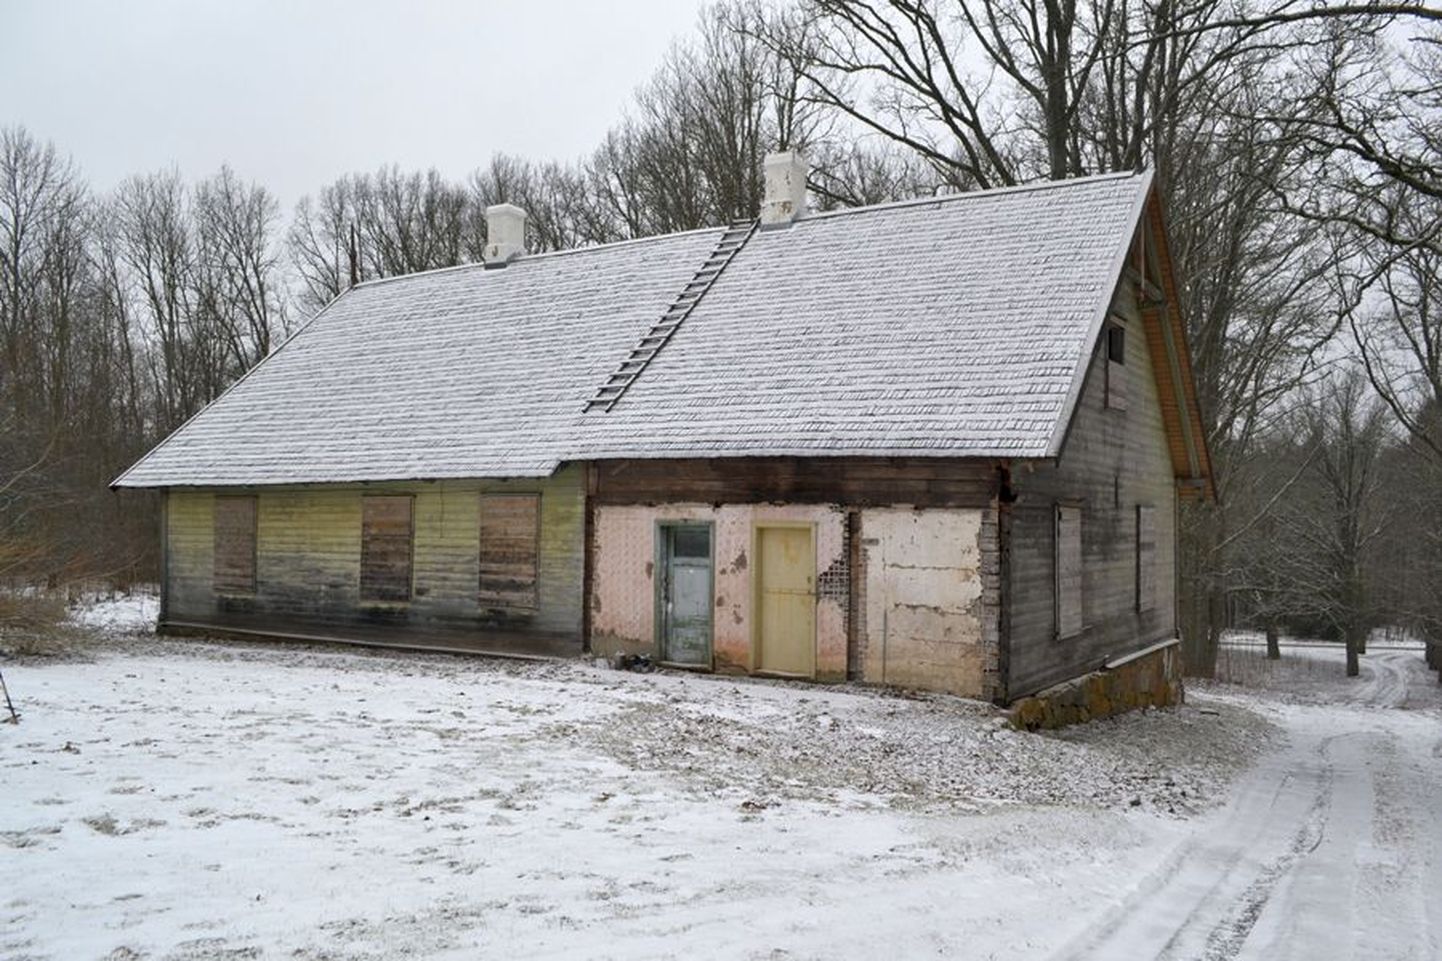 Ala külas asuv Sooglemäe on mahajäetud hoonetega lagunev talu. Kui aga mulkide plaan teoks saab, võib just sellest kohast kujuneda Mulgimaa kõige külgetõmbavam koht.